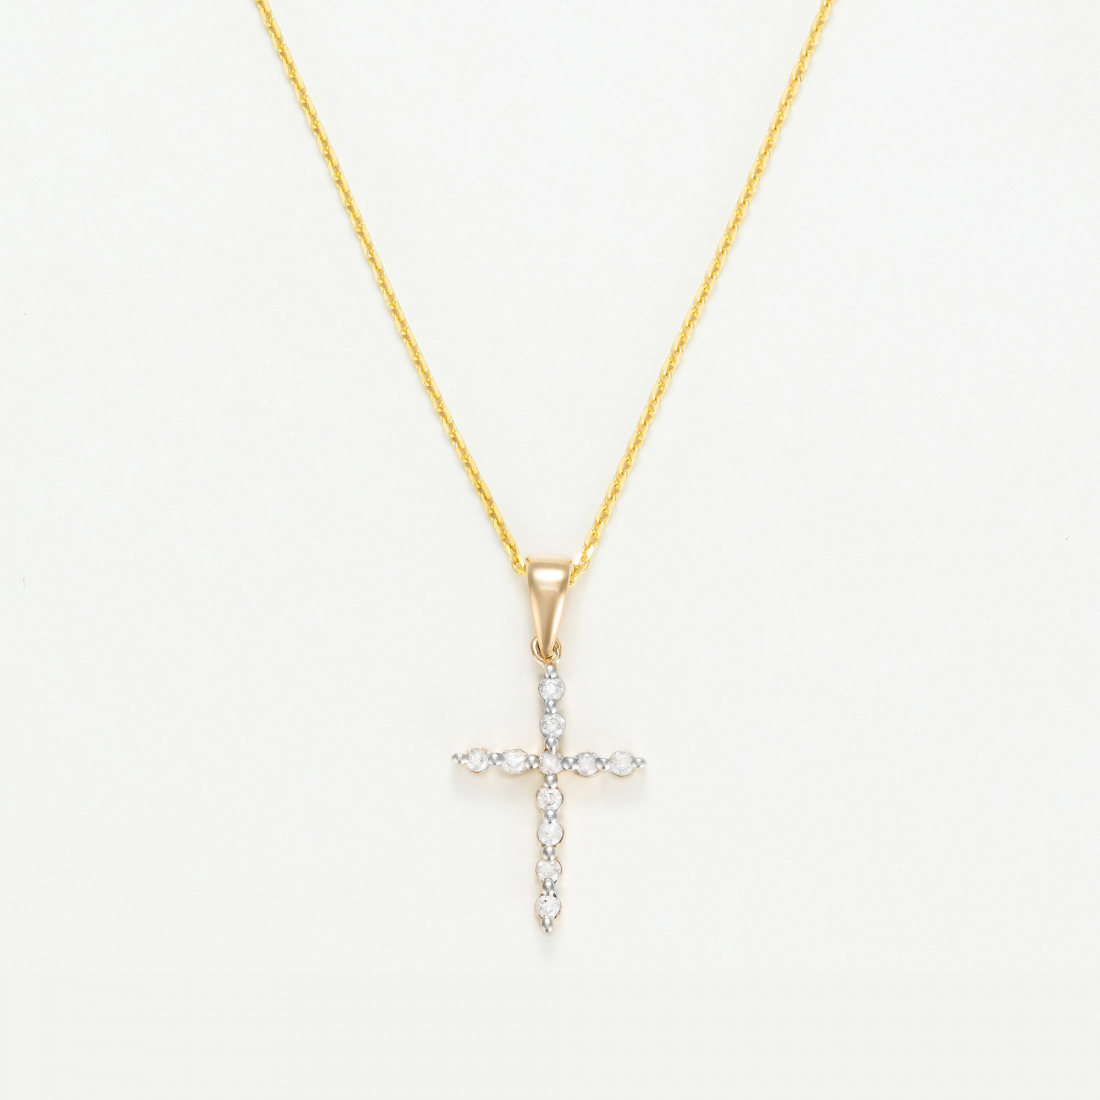 Women's 'Croix Brillante' Pendant with chain